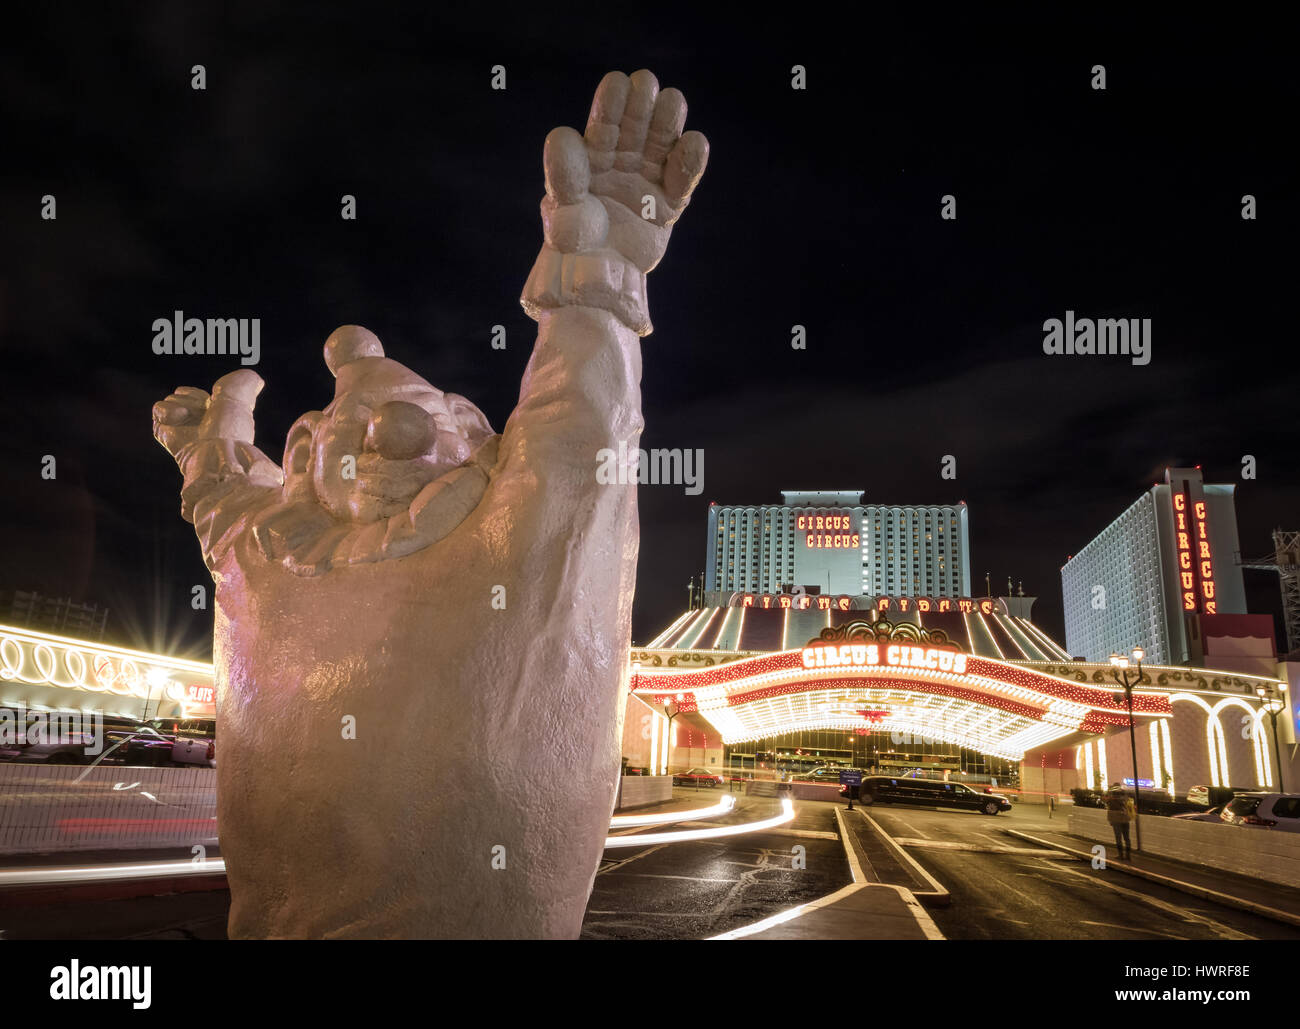 Clown at Circus Circus Hotel and Casino entrance at night - Las Vegas, Nevada, USA Stock Photo